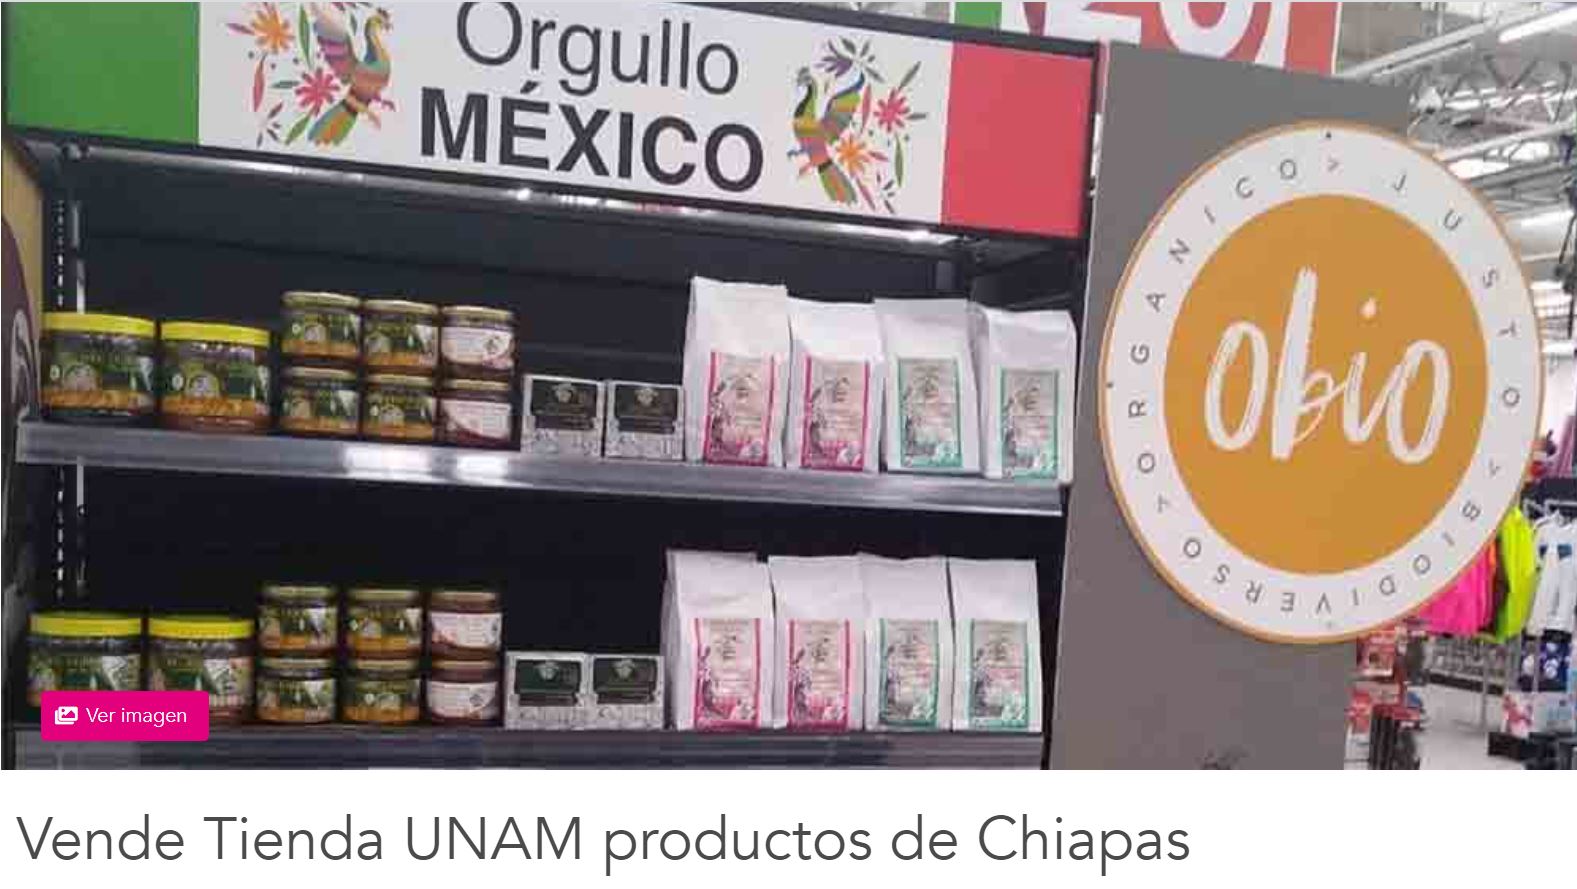 Vende Tienda UNAM productos de Chiapas